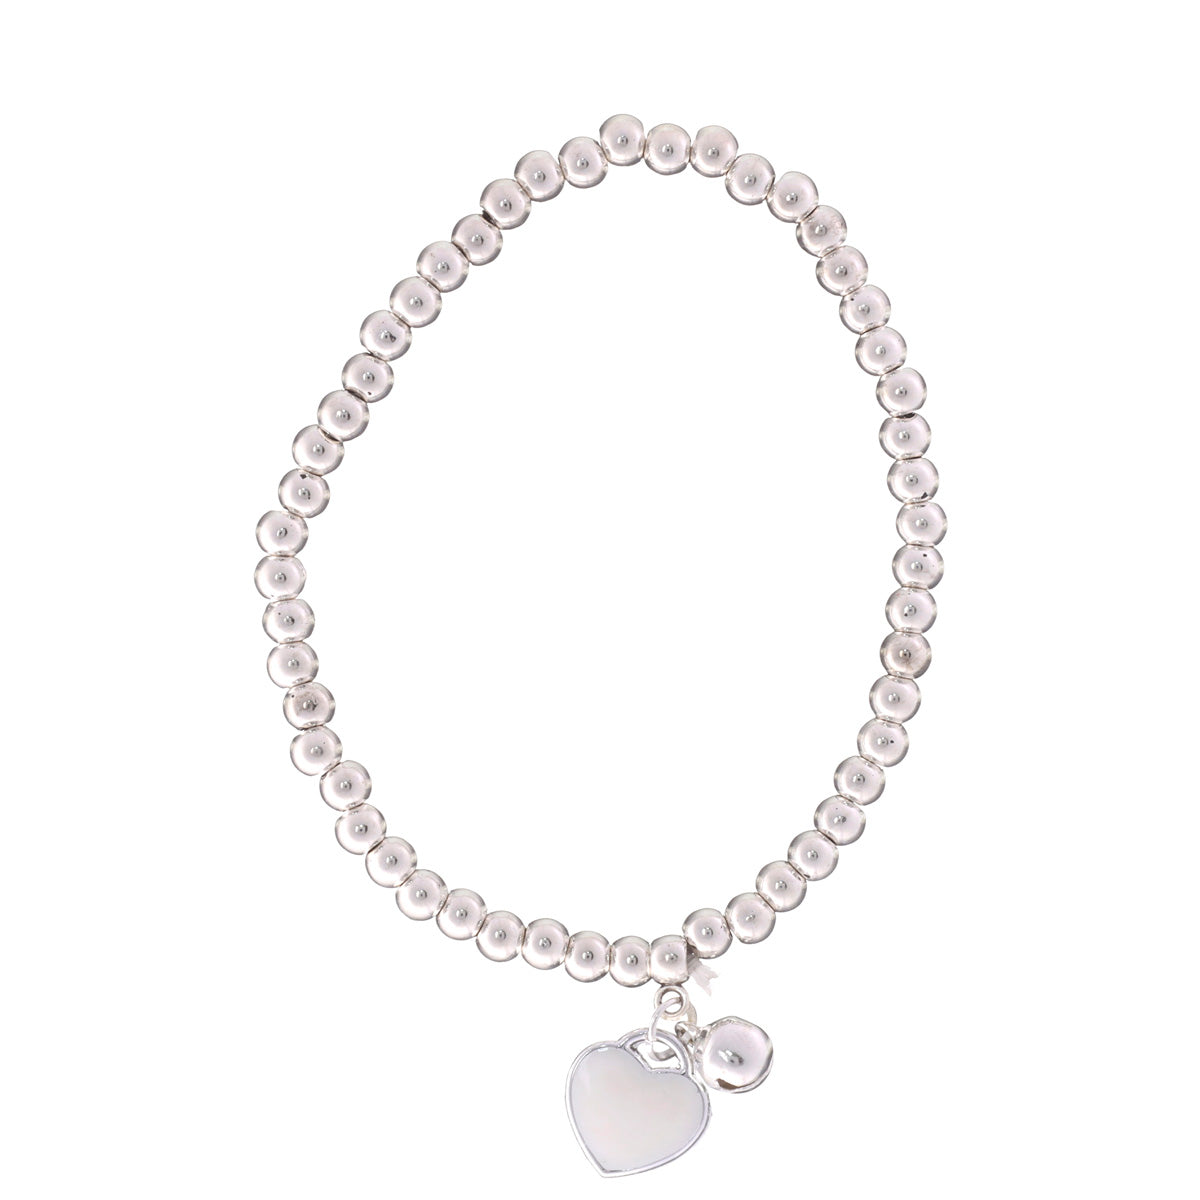 Flexible bracelet with heart pendant 1pcs